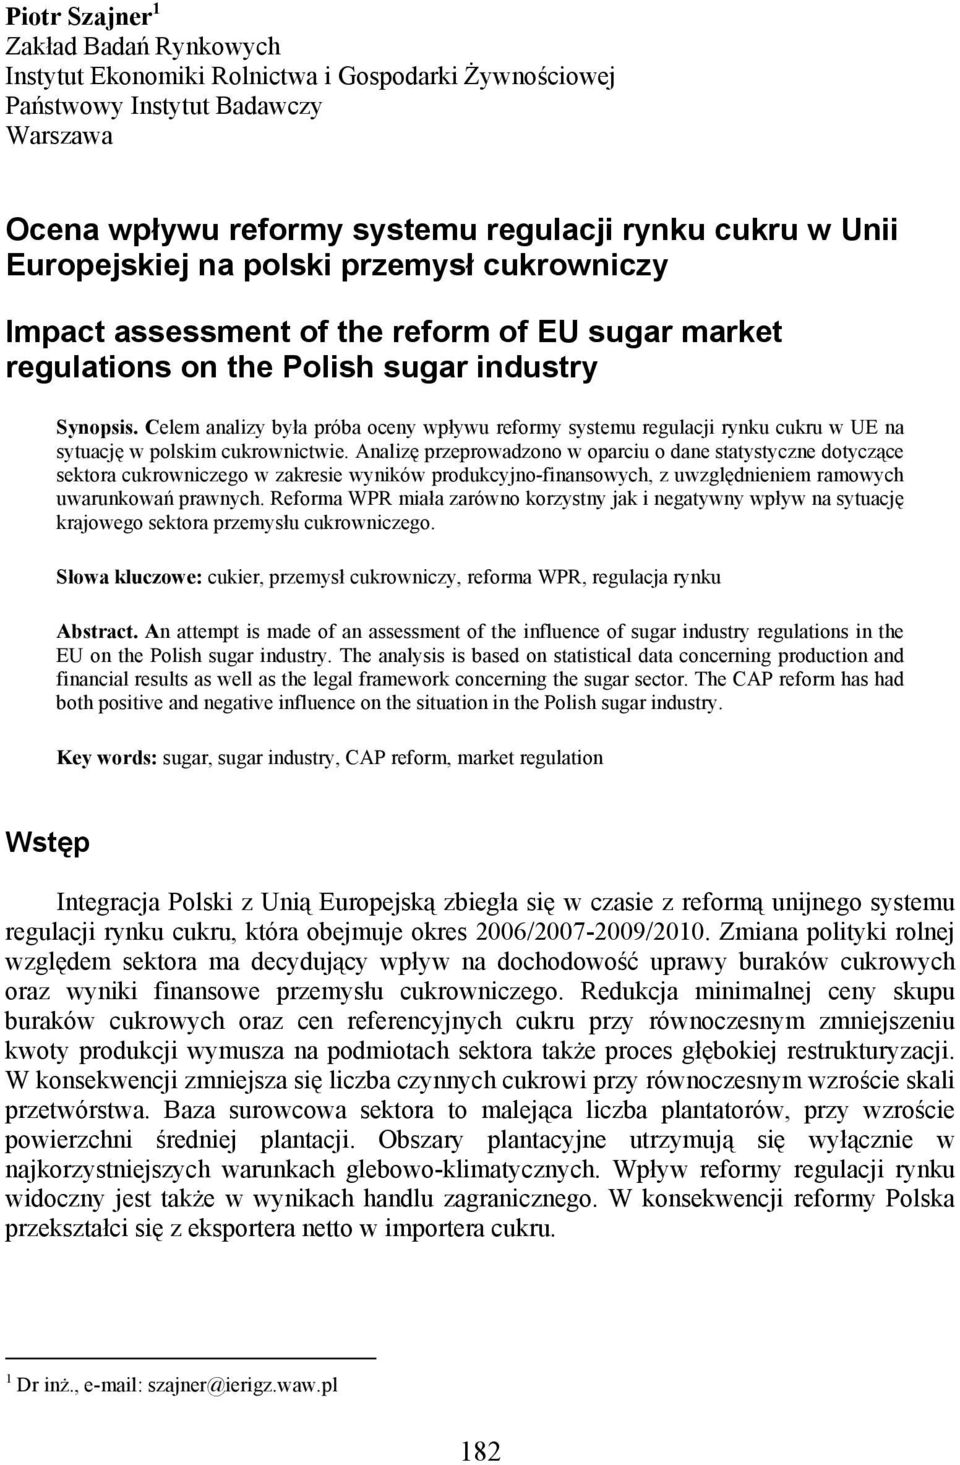 Celem analizy była próba oceny wpływu reformy systemu regulacji rynku cukru w UE na sytuację w polskim cukrownictwie.